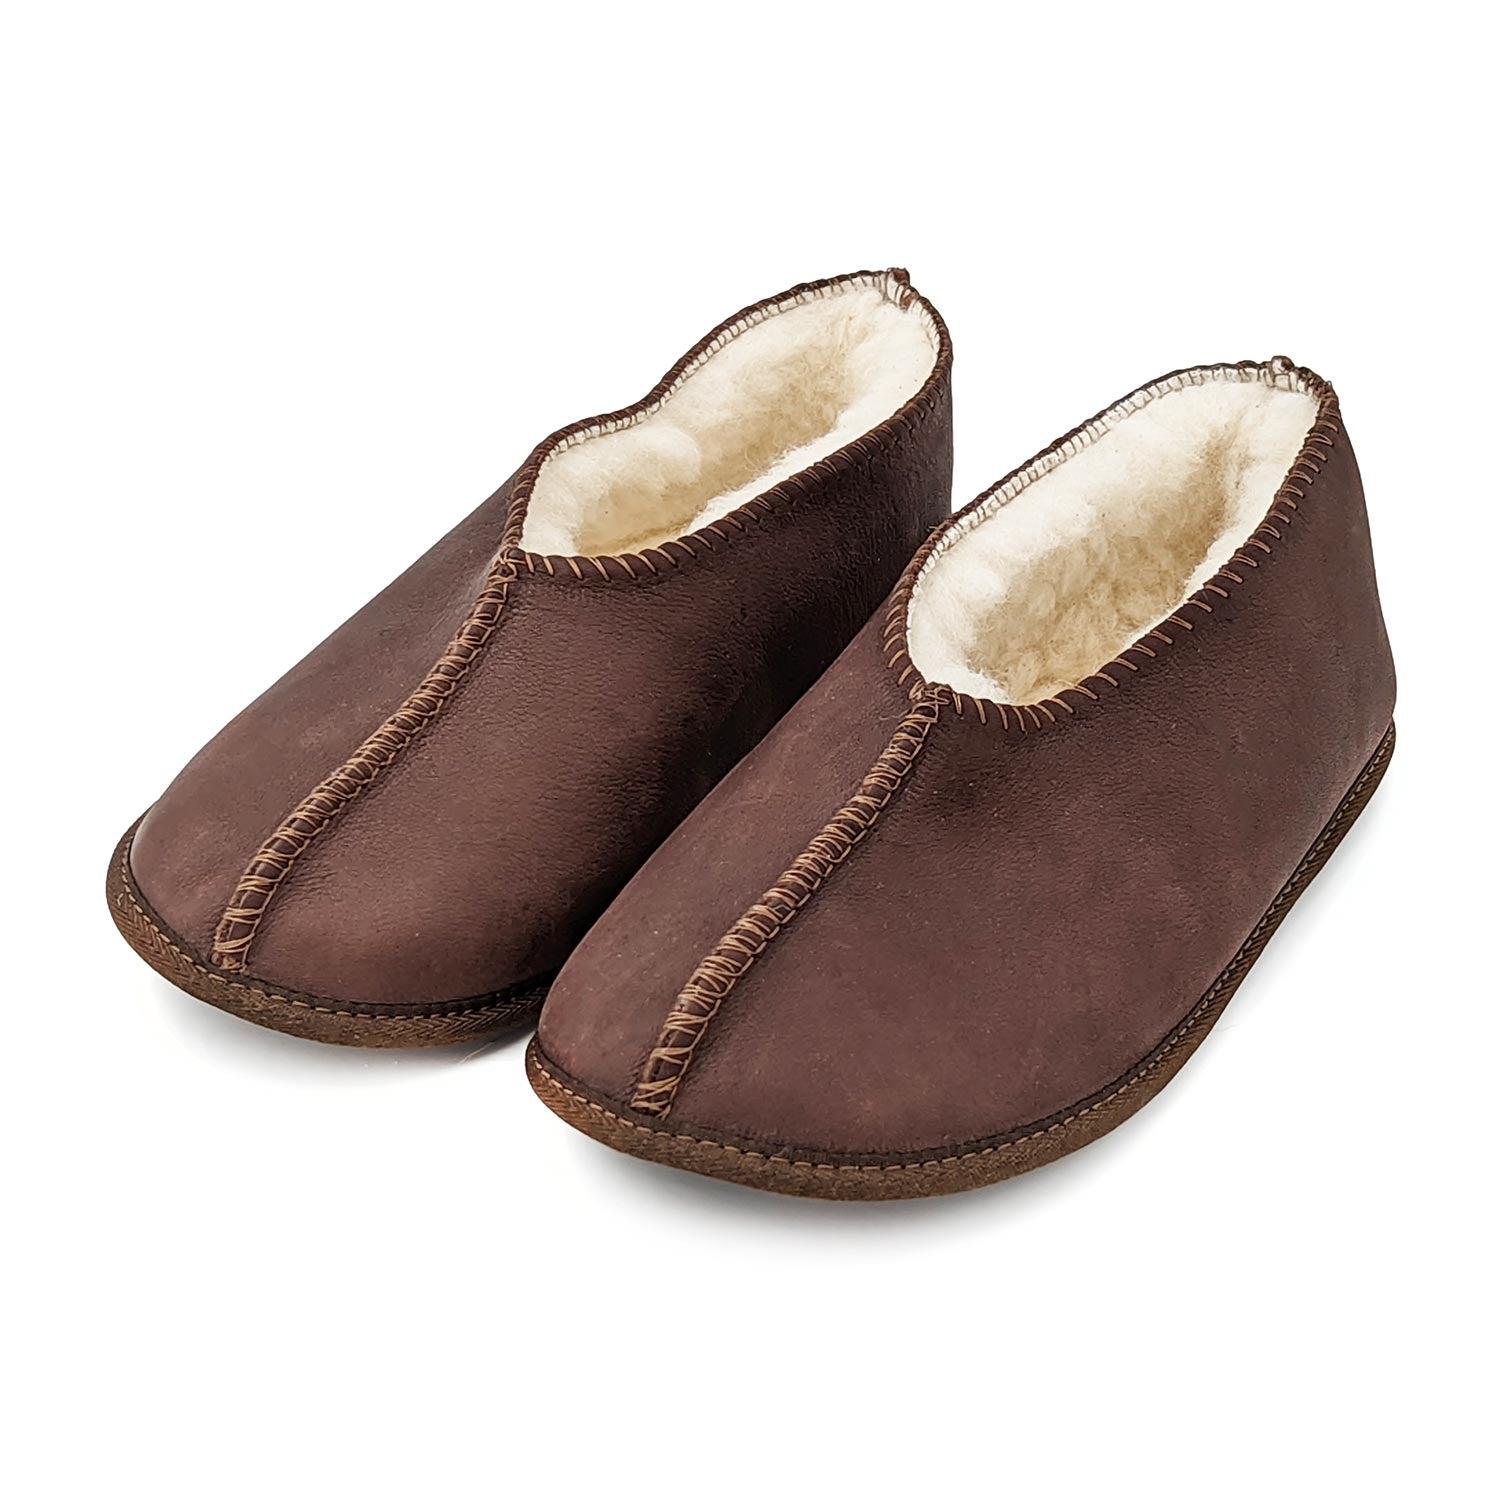 Karu Shloffy Choc Brown Leather & Wool Soft-Sole Slippers Slippers Karu Slippers 